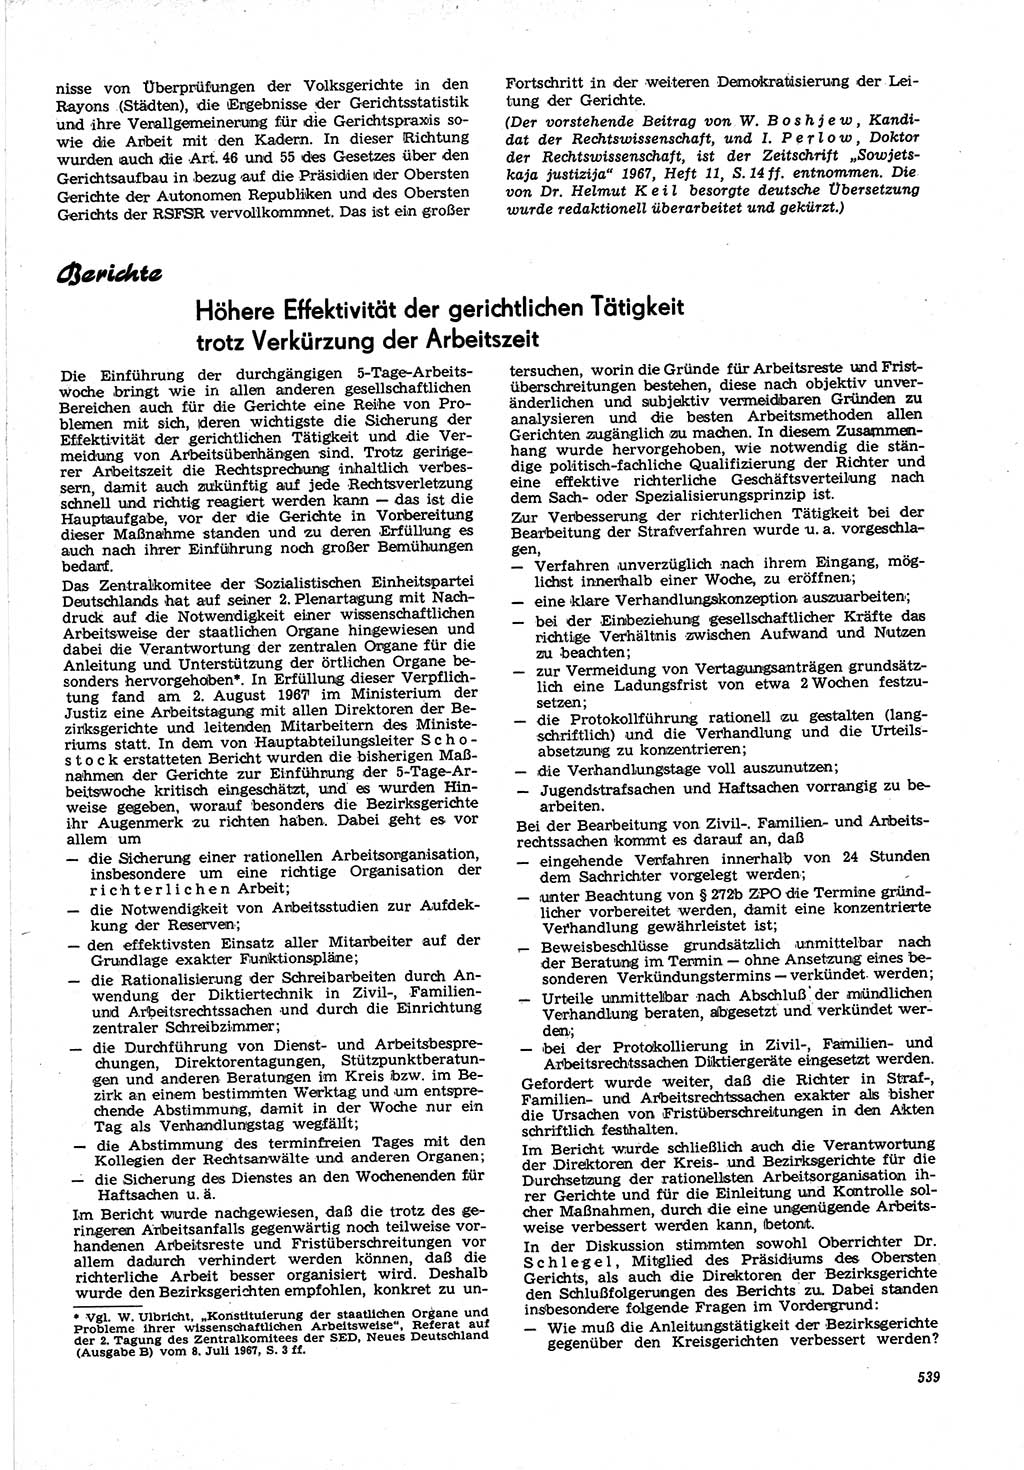 Neue Justiz (NJ), Zeitschrift für Recht und Rechtswissenschaft [Deutsche Demokratische Republik (DDR)], 21. Jahrgang 1967, Seite 539 (NJ DDR 1967, S. 539)